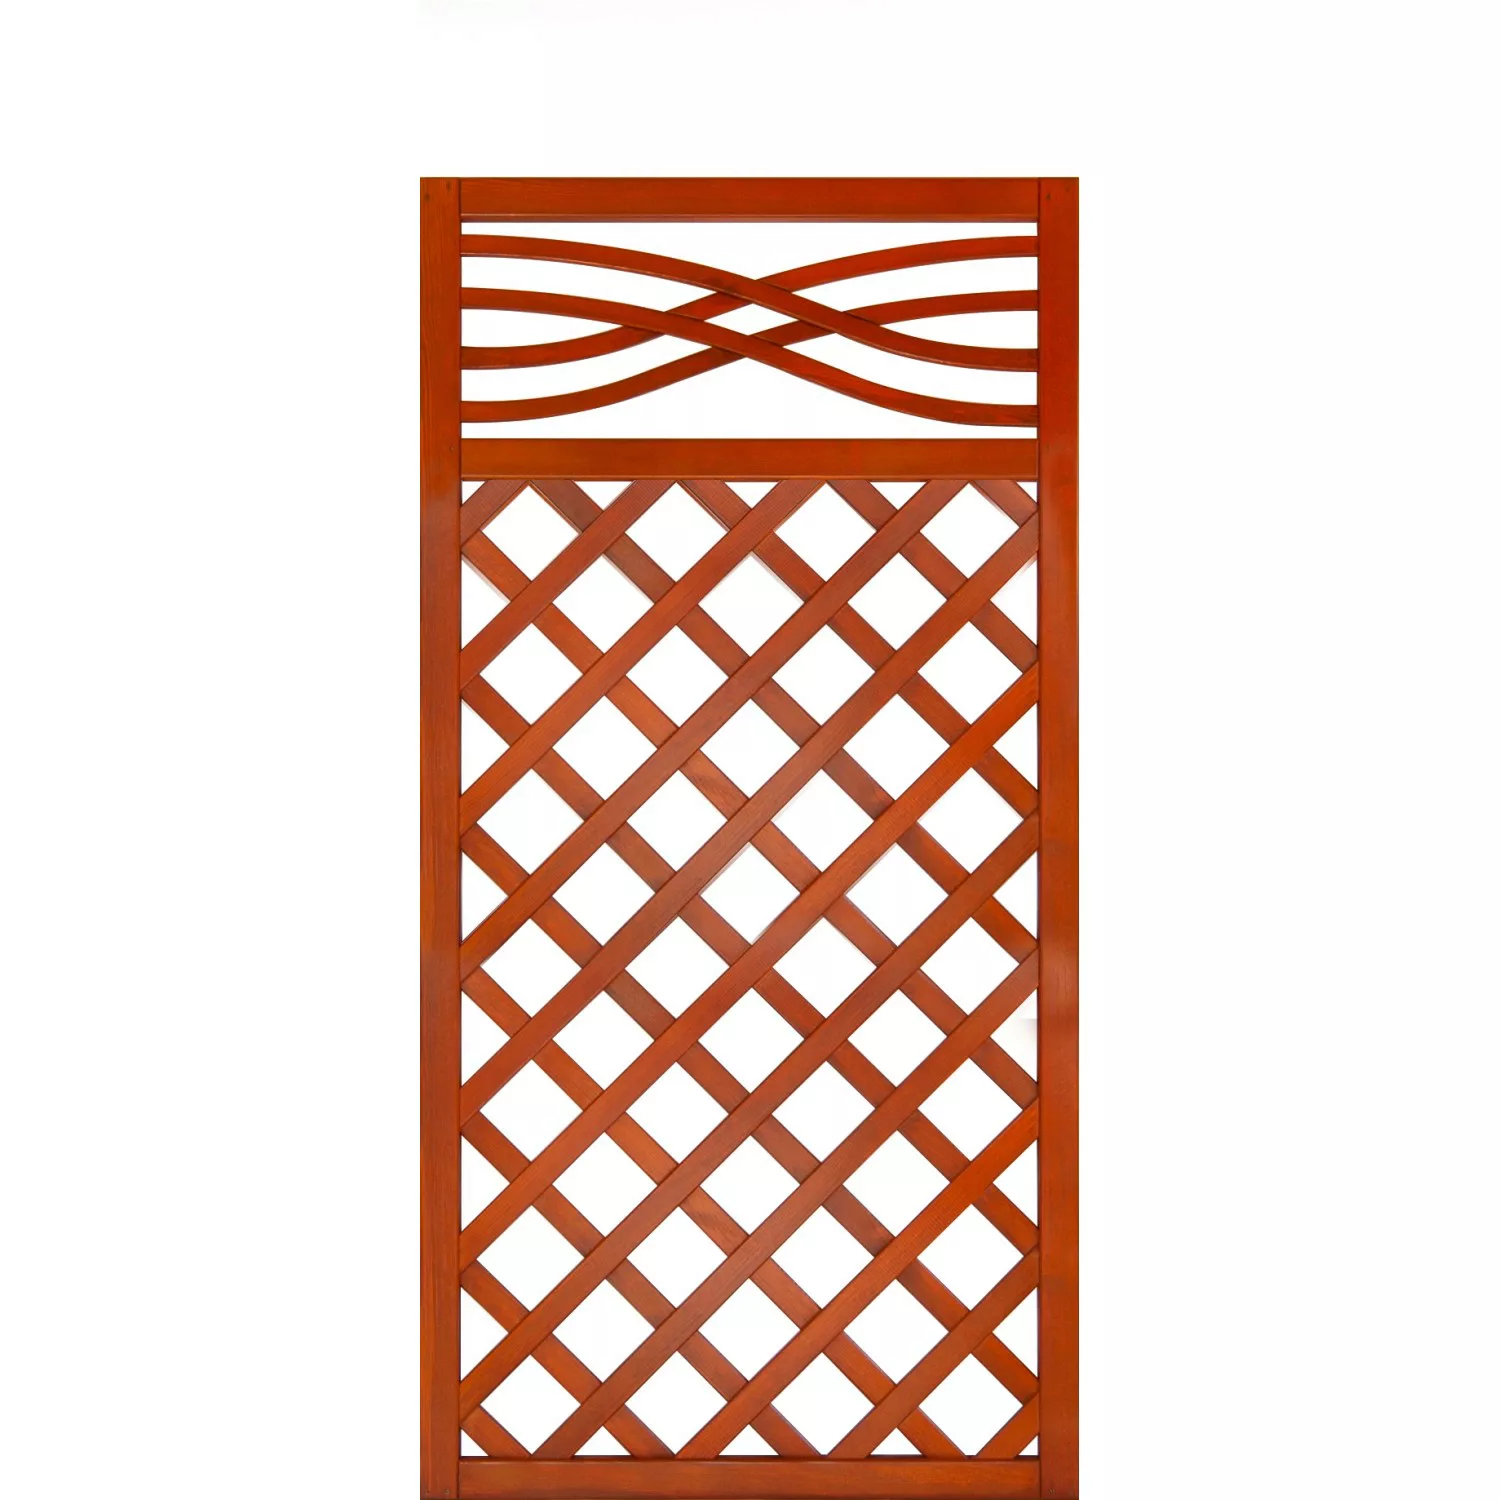 Andrewex Zaunelement Malaga mit Gitter 180 cm x 90 cm Teak FSC günstig online kaufen